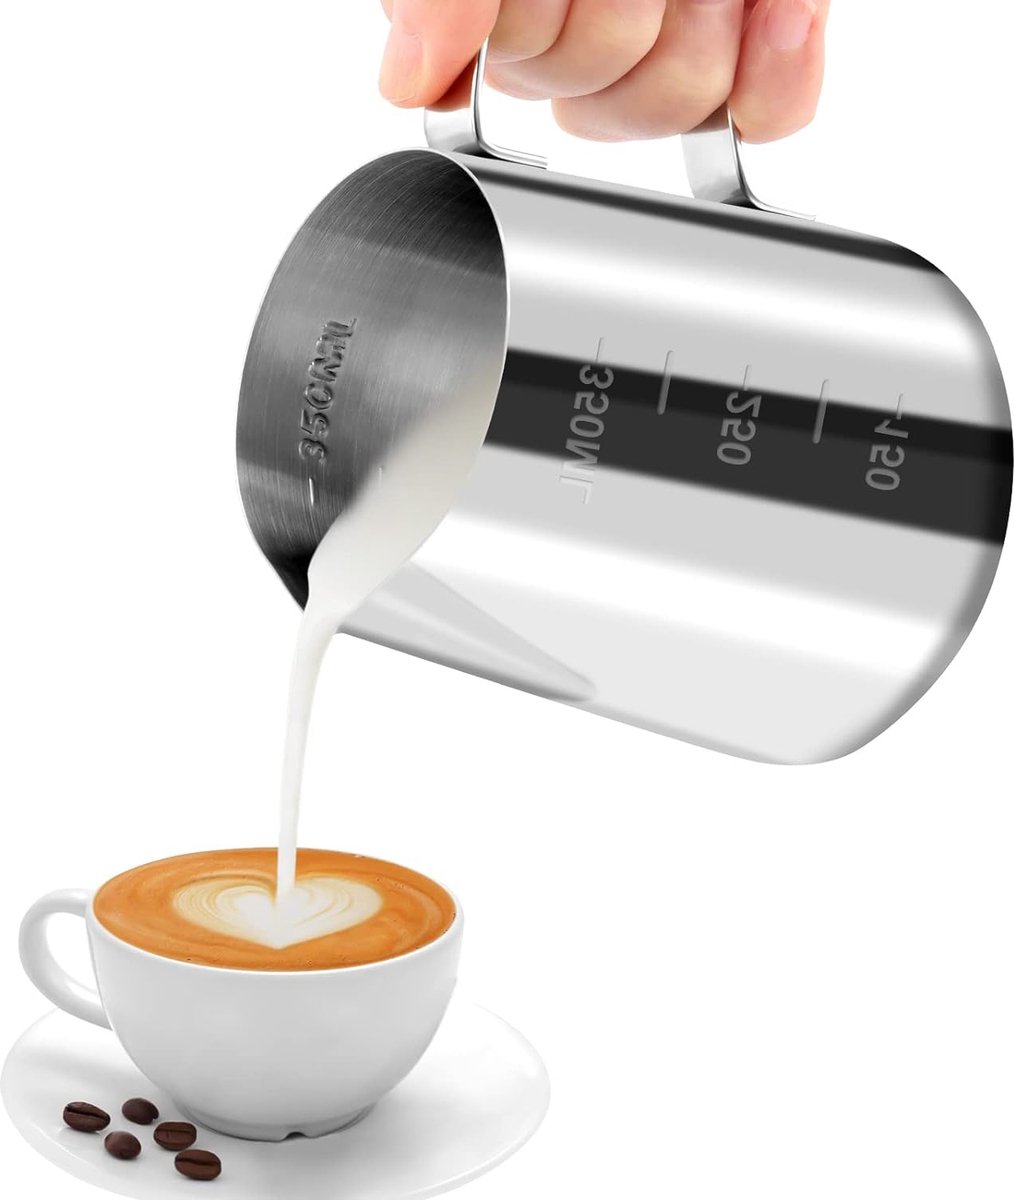 Merkloos Melkkannetje 350 ml handheld roestvrij staal opschuimkannetje koffiecrème melk opschuimers beker met meetmarkering melkkannetje perfect voor barista cappuccino espresso latte